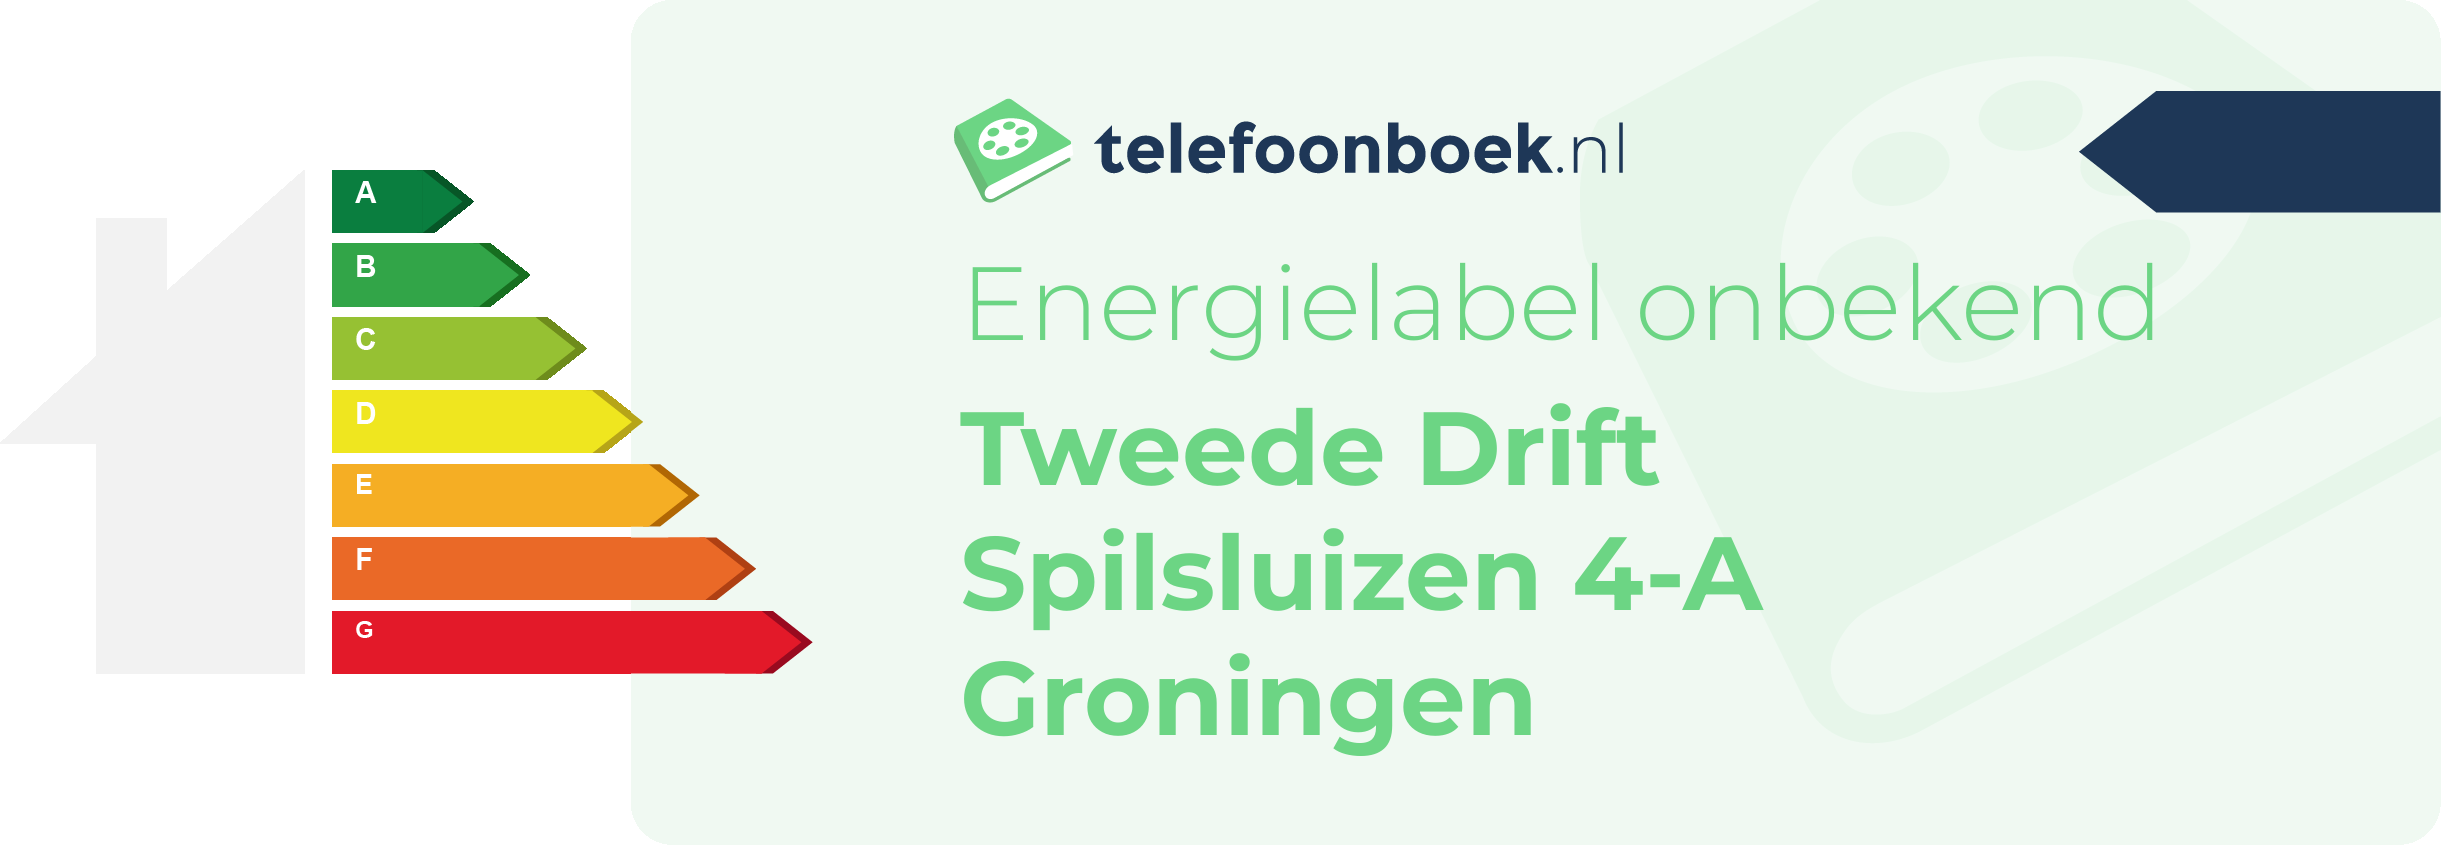 Energielabel Tweede Drift Spilsluizen 4-A Groningen